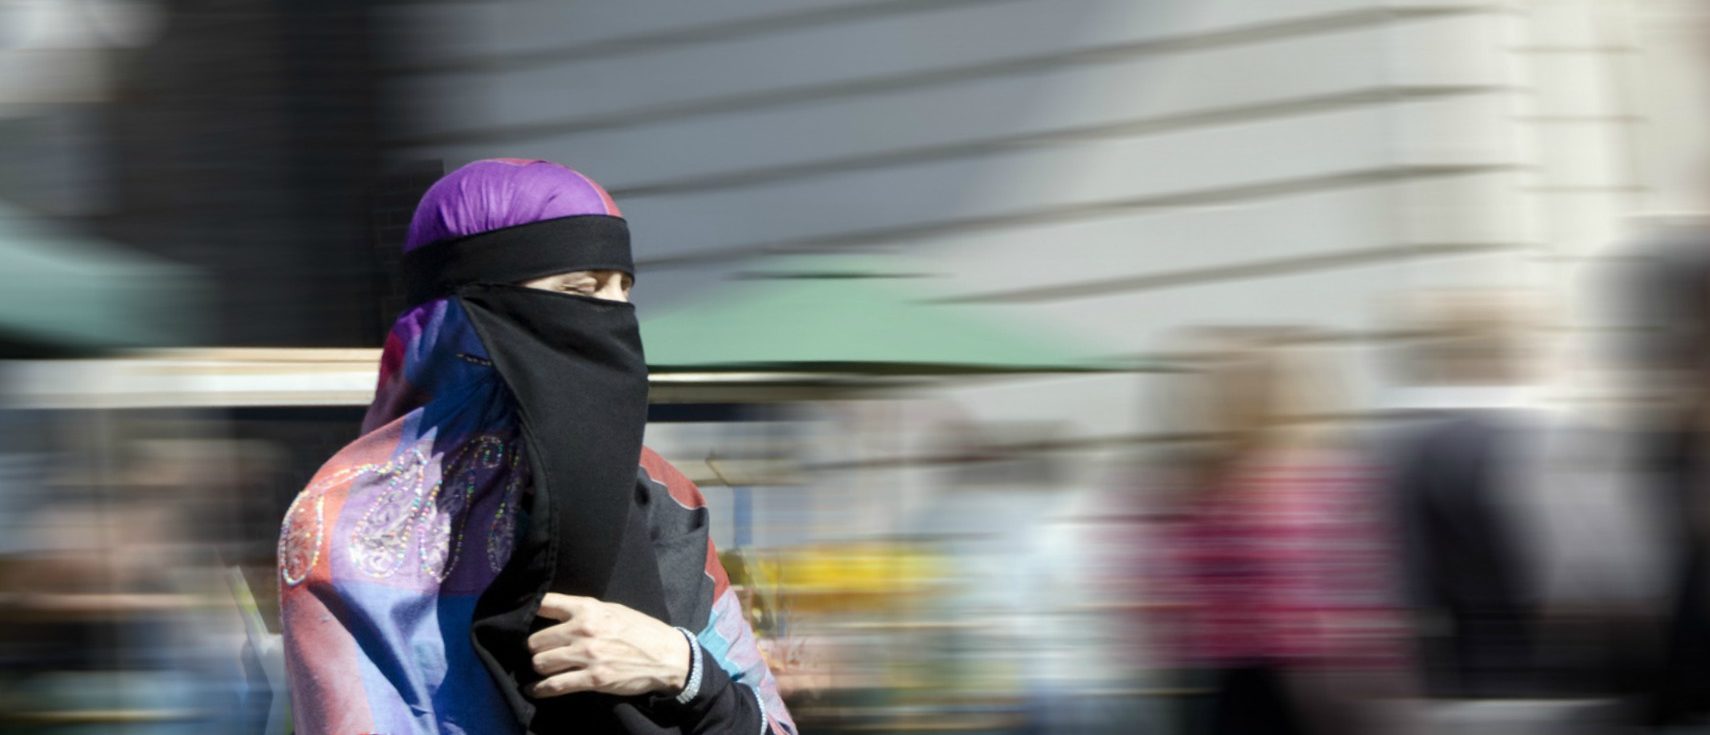 La FSCI et la PJLS sont contre l'initiative anti-burqa au nom de la liberté religieuse | © Steve/Flickr/CC BY-ND 2.0